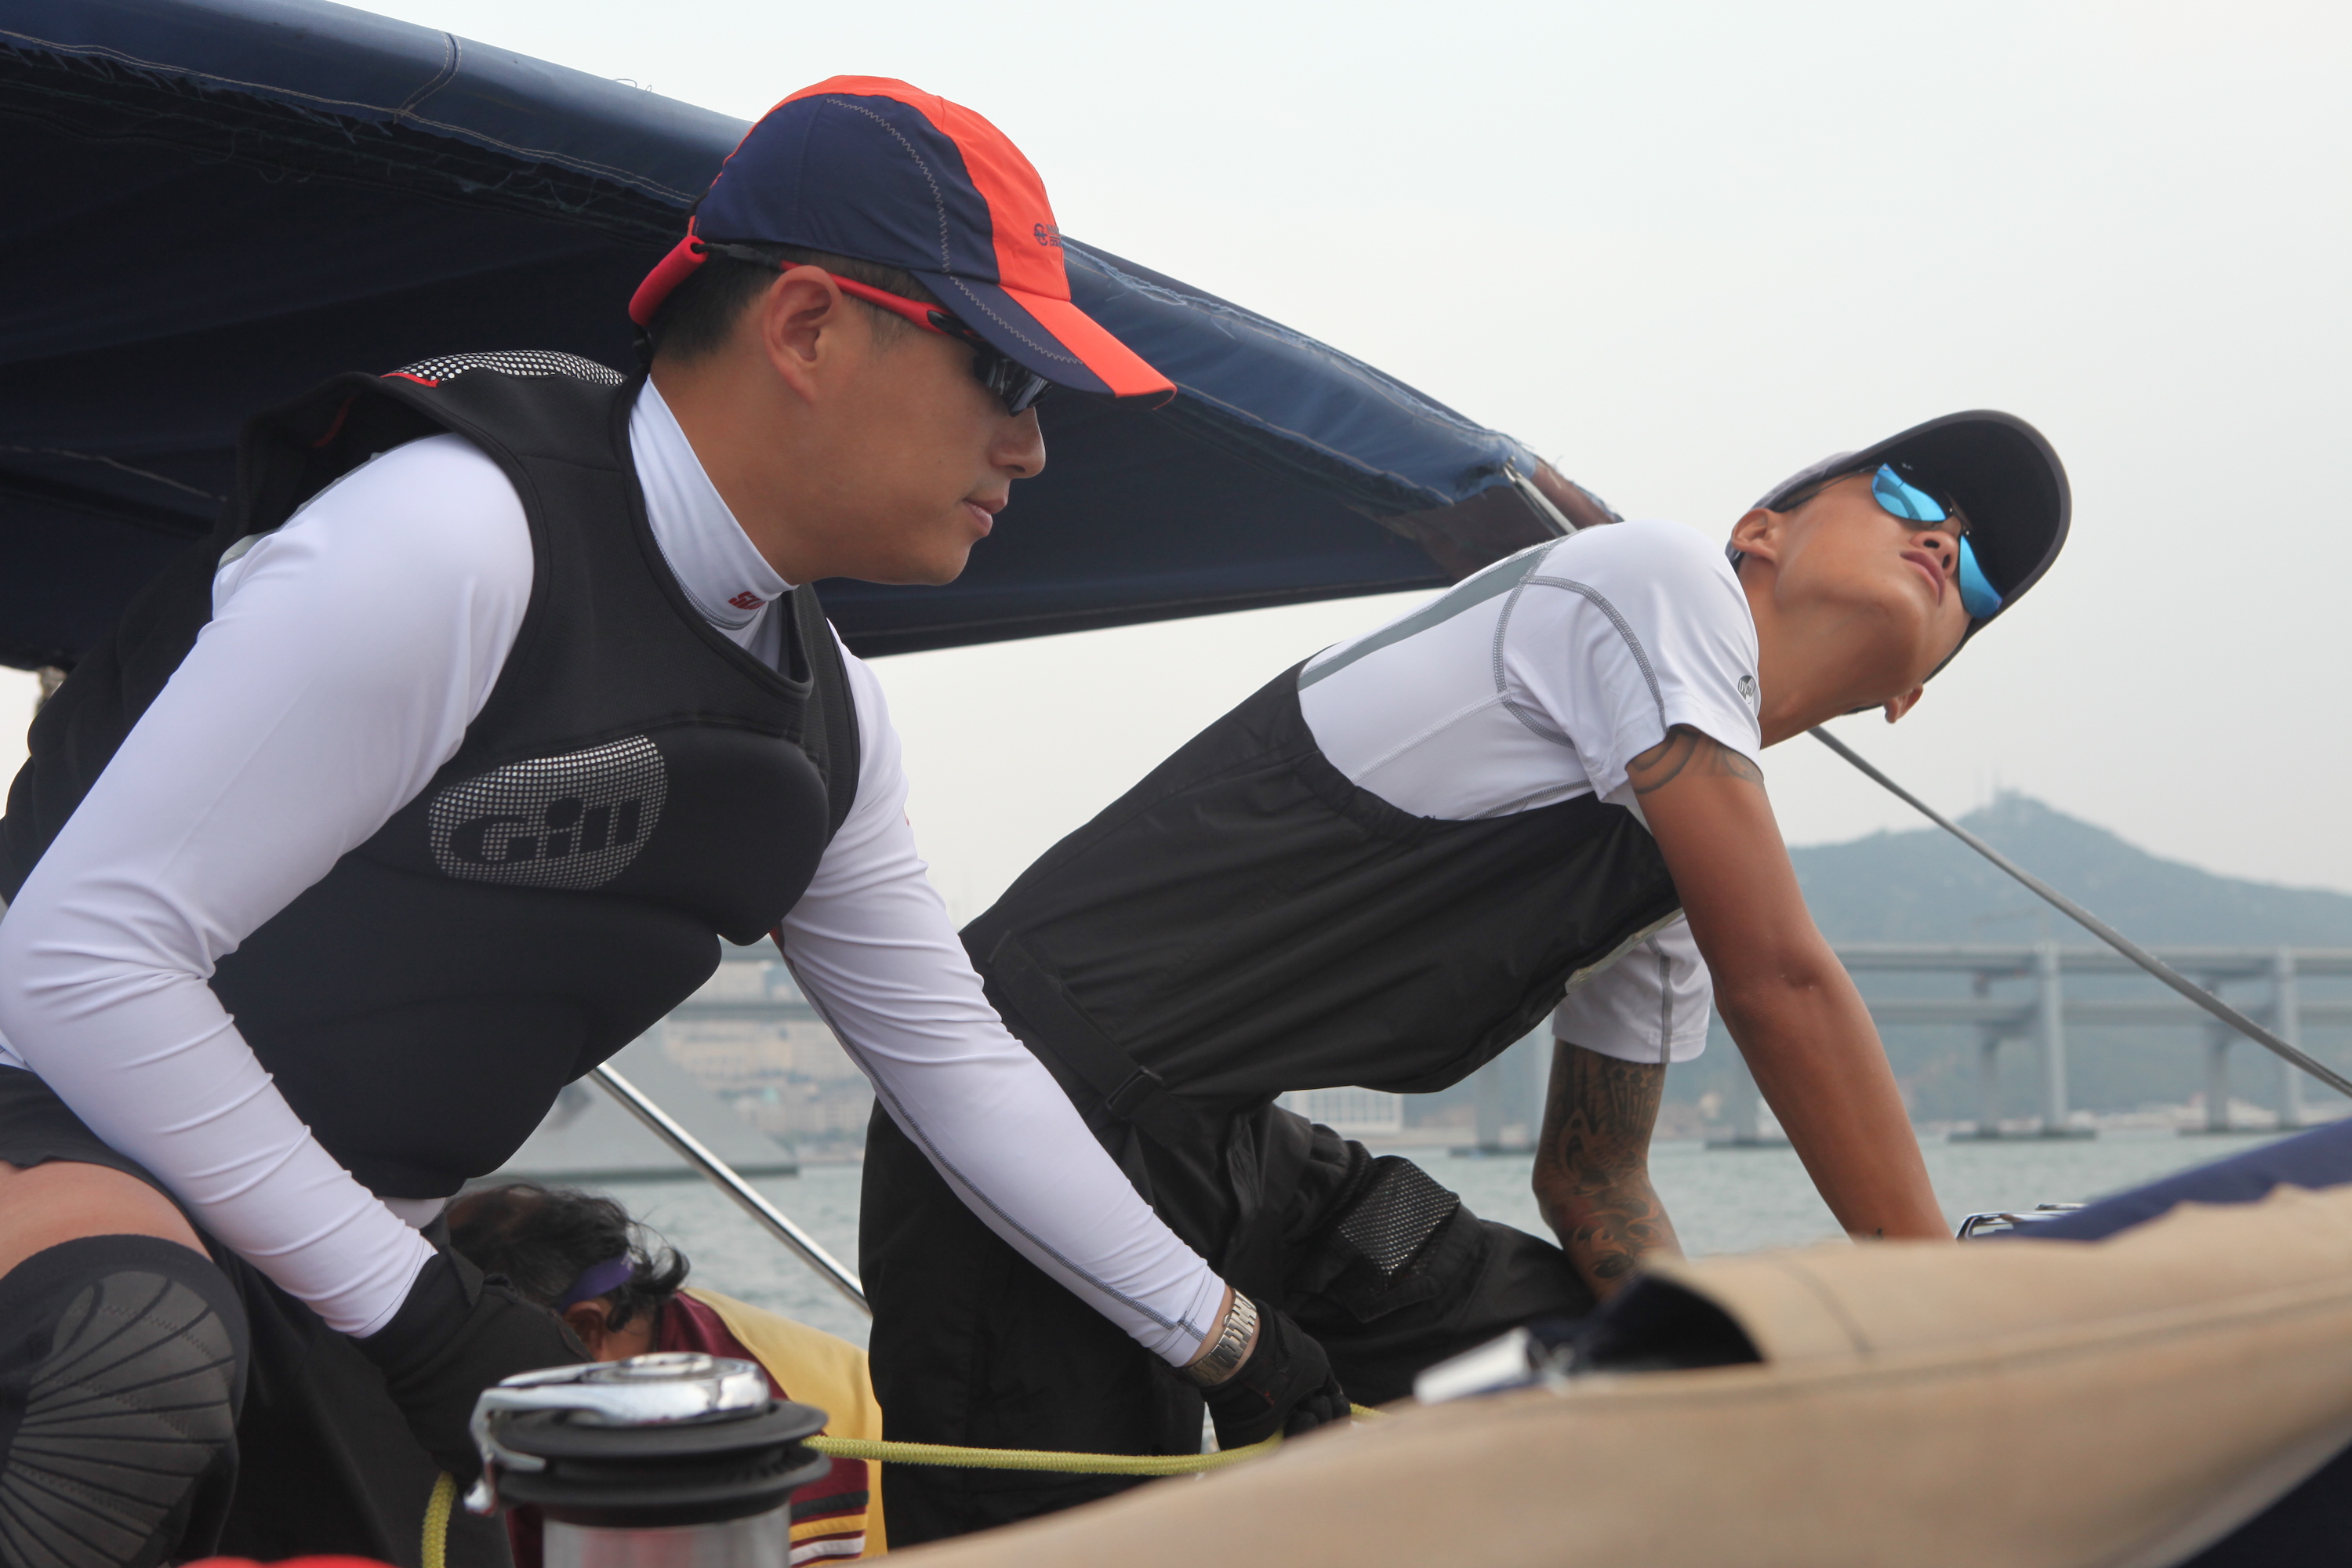 我要航海网千航帆船队2016环渤海杯帆船拉力赛IMG_6025.JPG